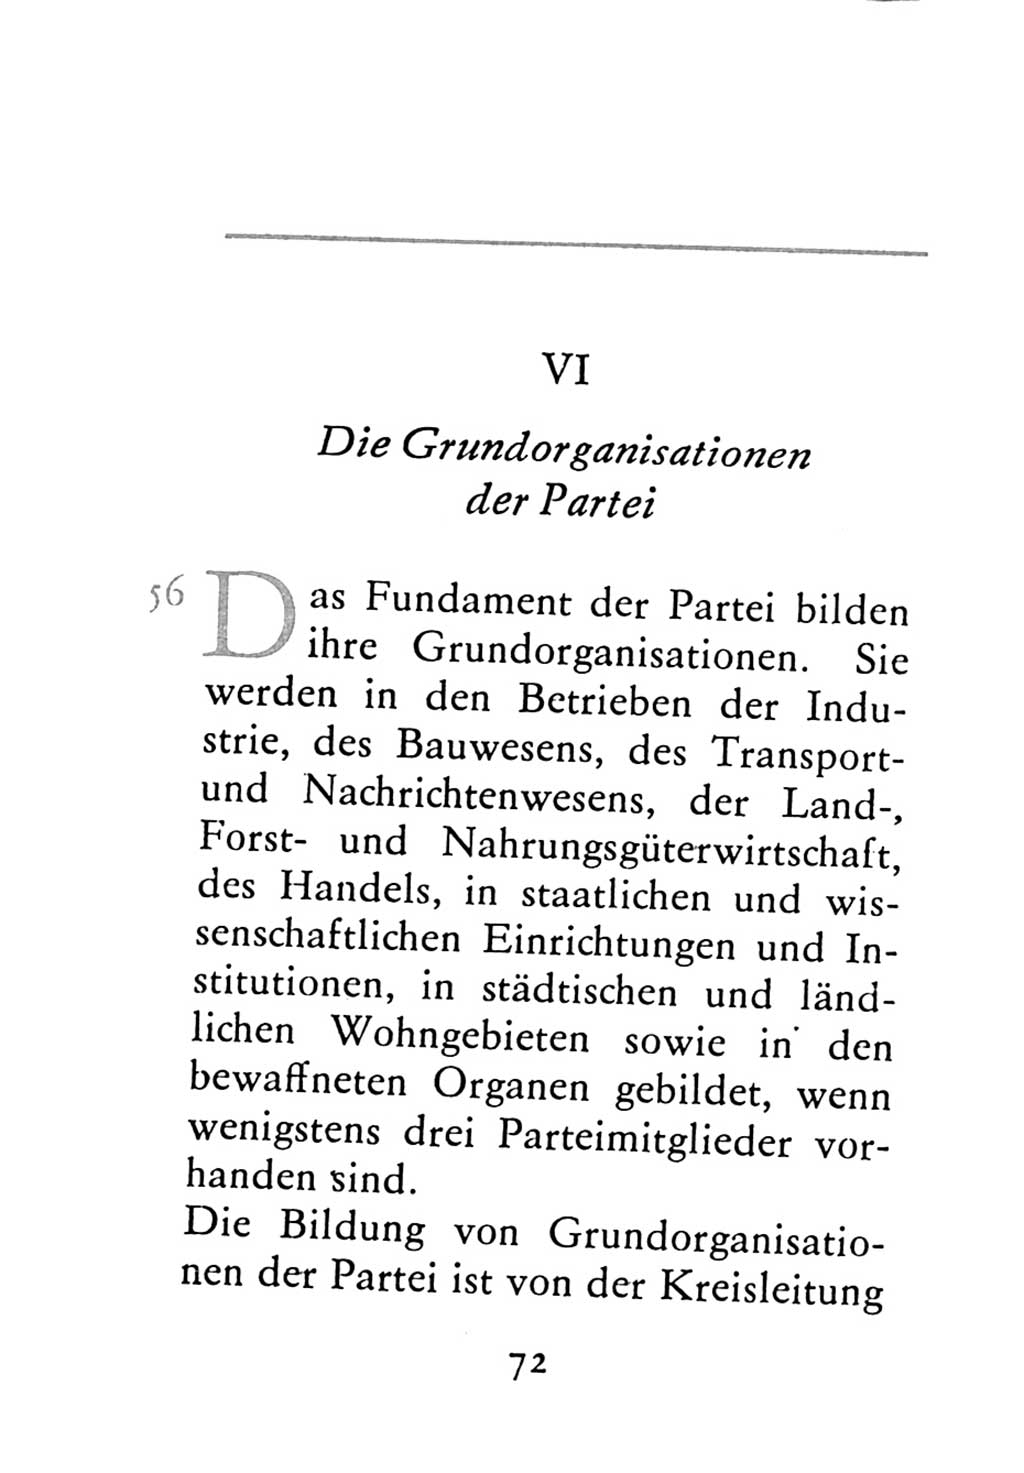 Statut der Sozialistischen Einheitspartei Deutschlands (SED) 1976, Seite 72 (St. SED DDR 1976, S. 72)